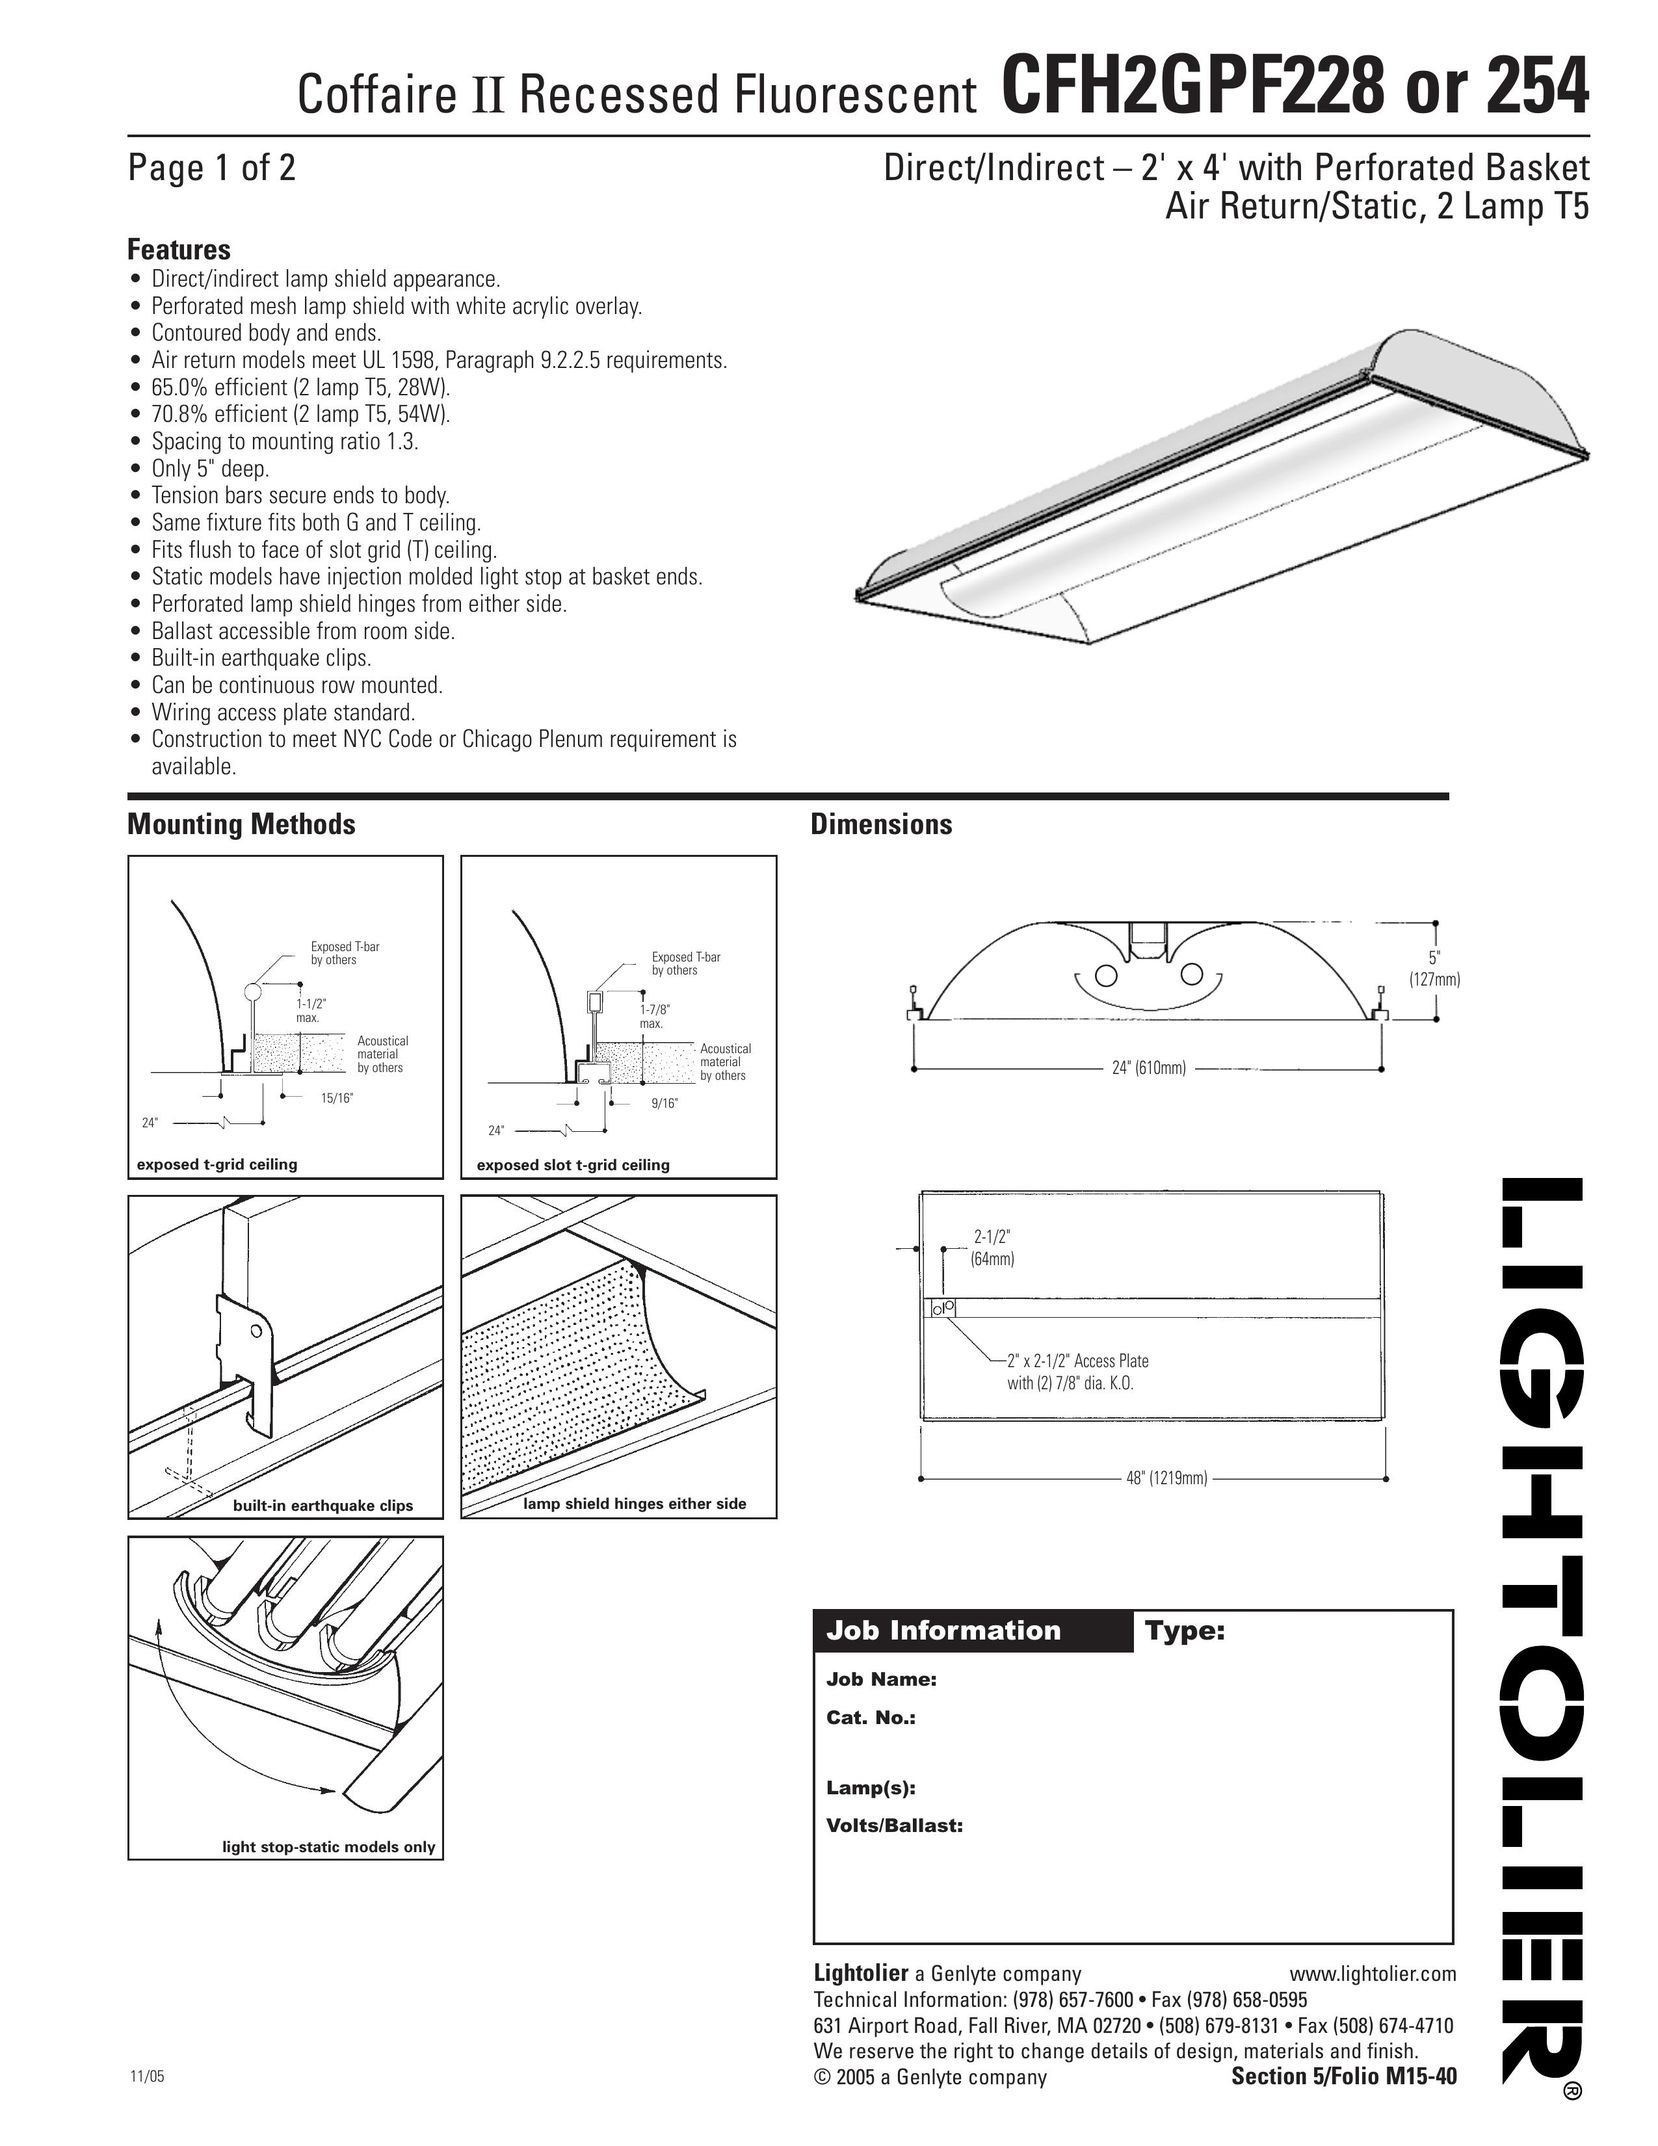 Lightolier CFH2GPF228 Work Light User Manual